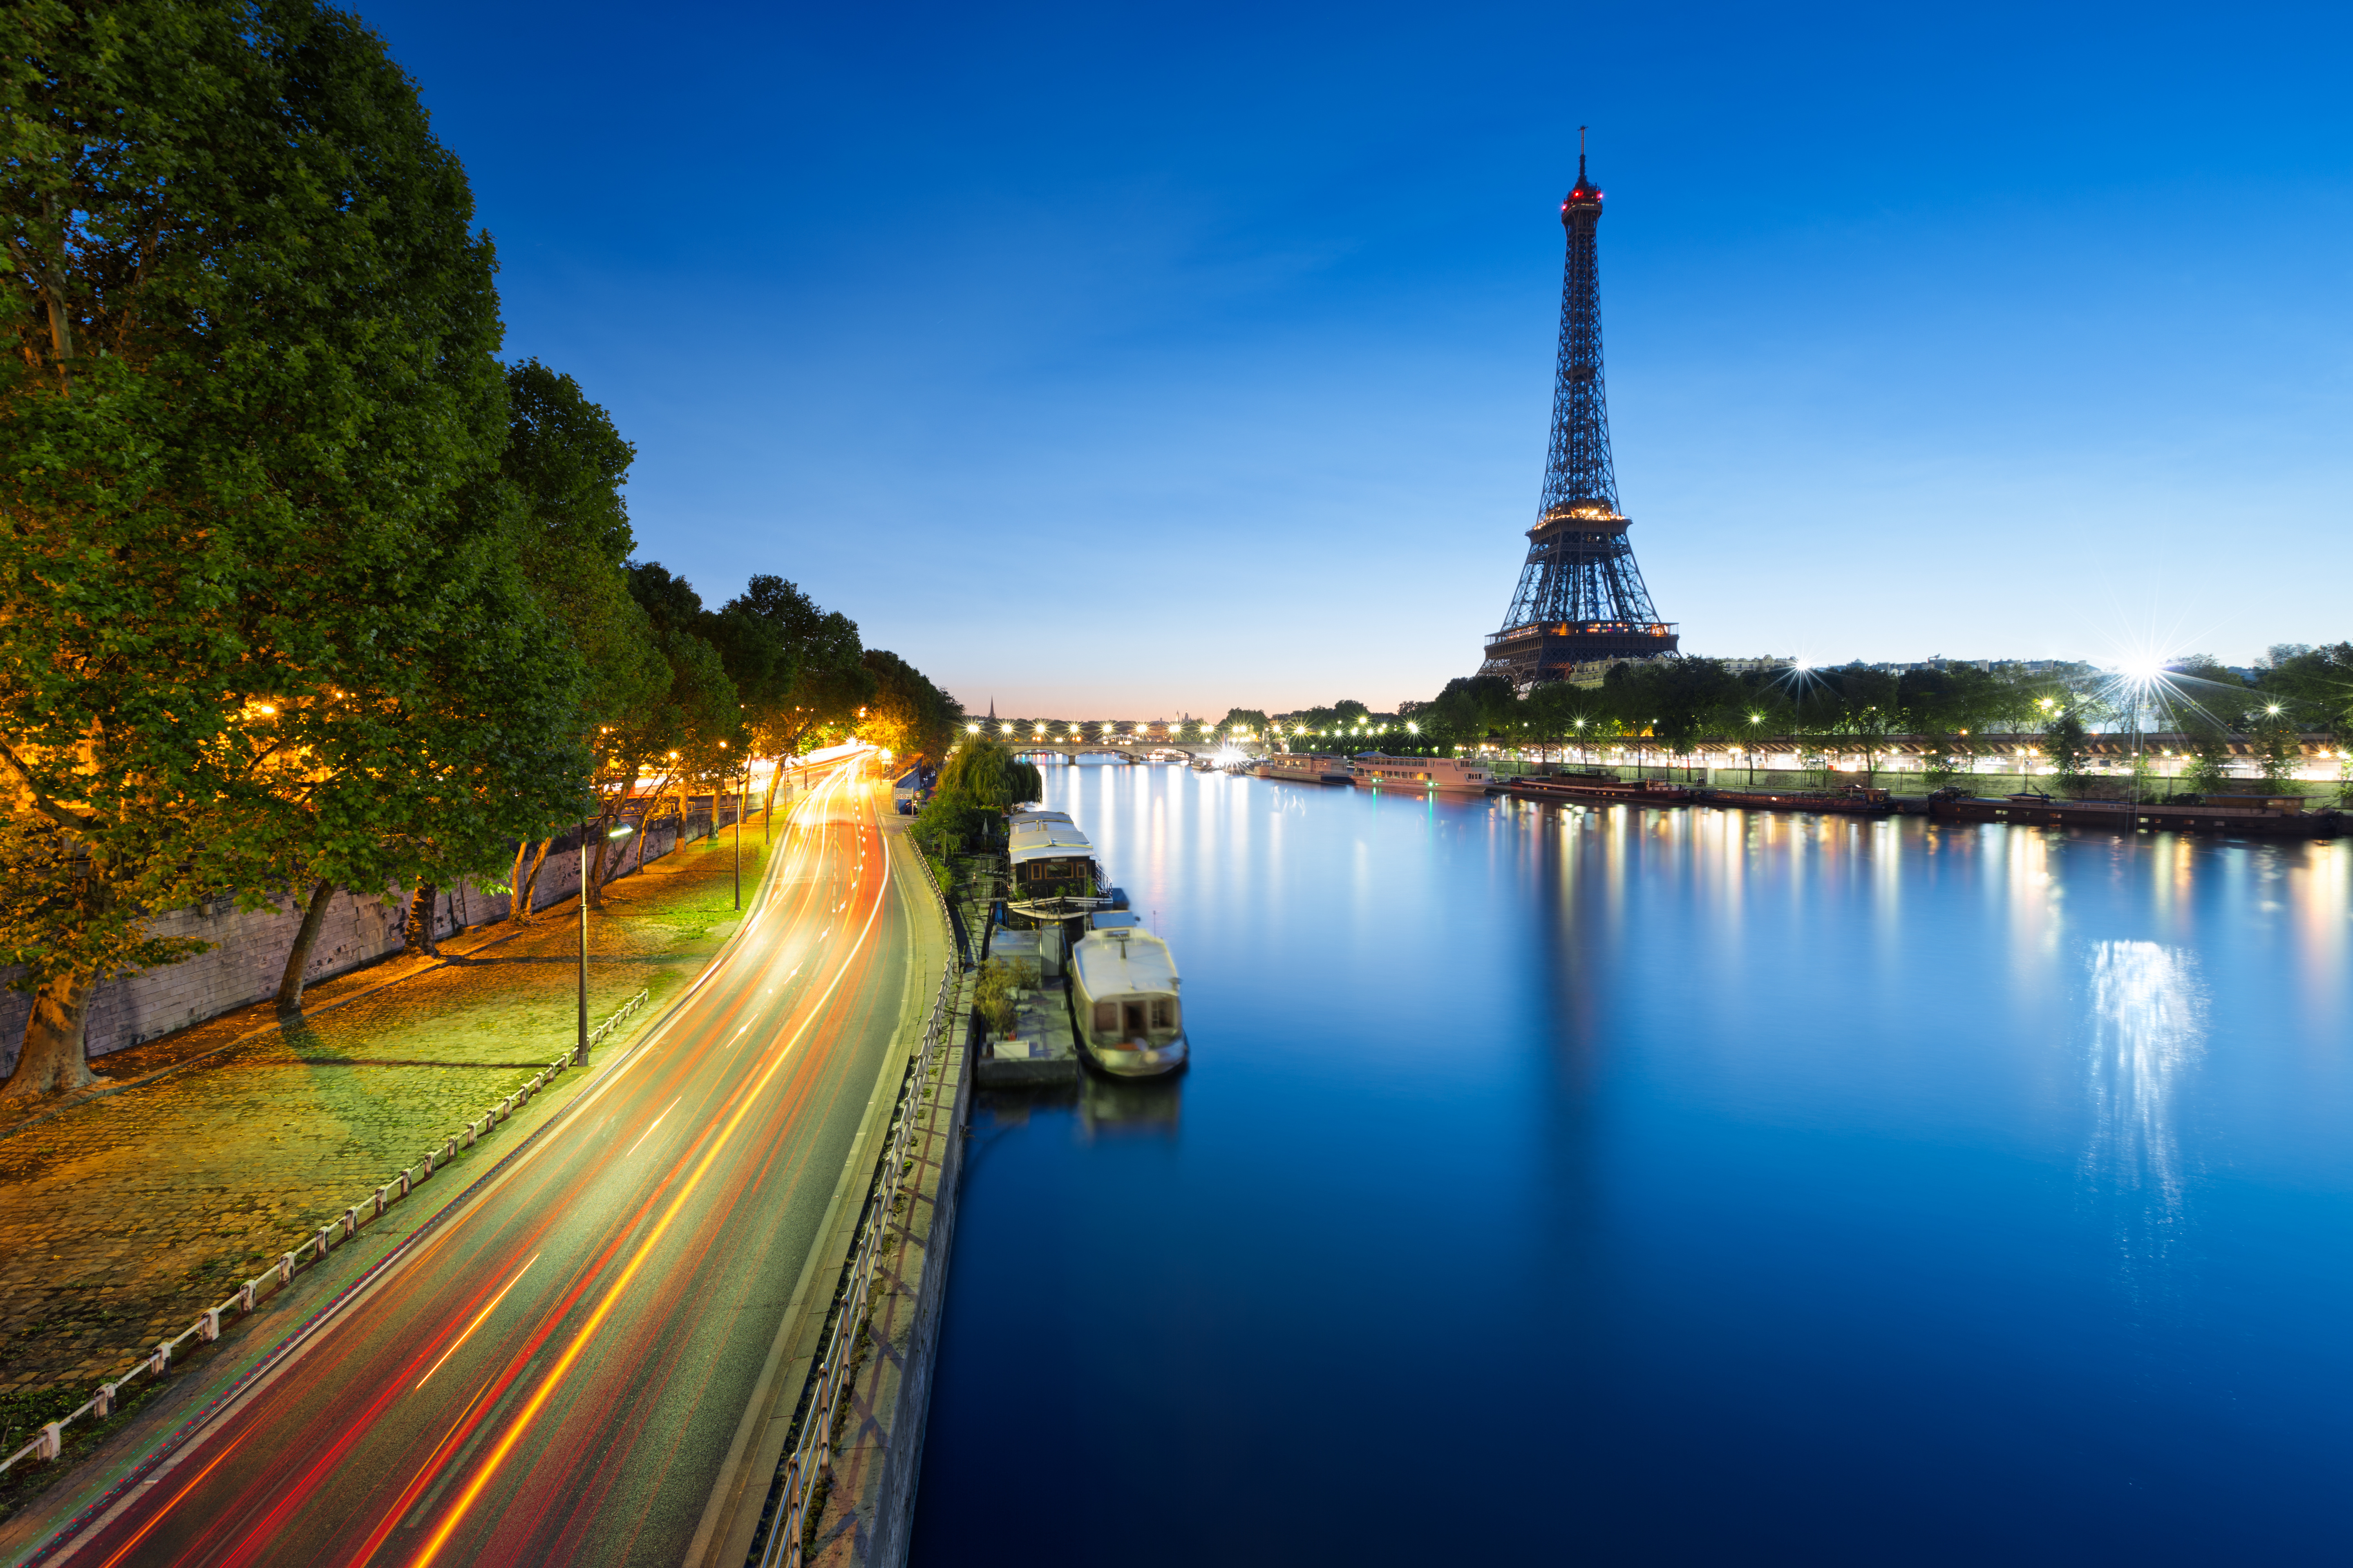 Обои на телефон самые красивые в мире. Эйфелева башня река сена. Франция Эйфель мост. Франция Париж Эйфелева башня. Париж. Эйфелева башня, река сена.